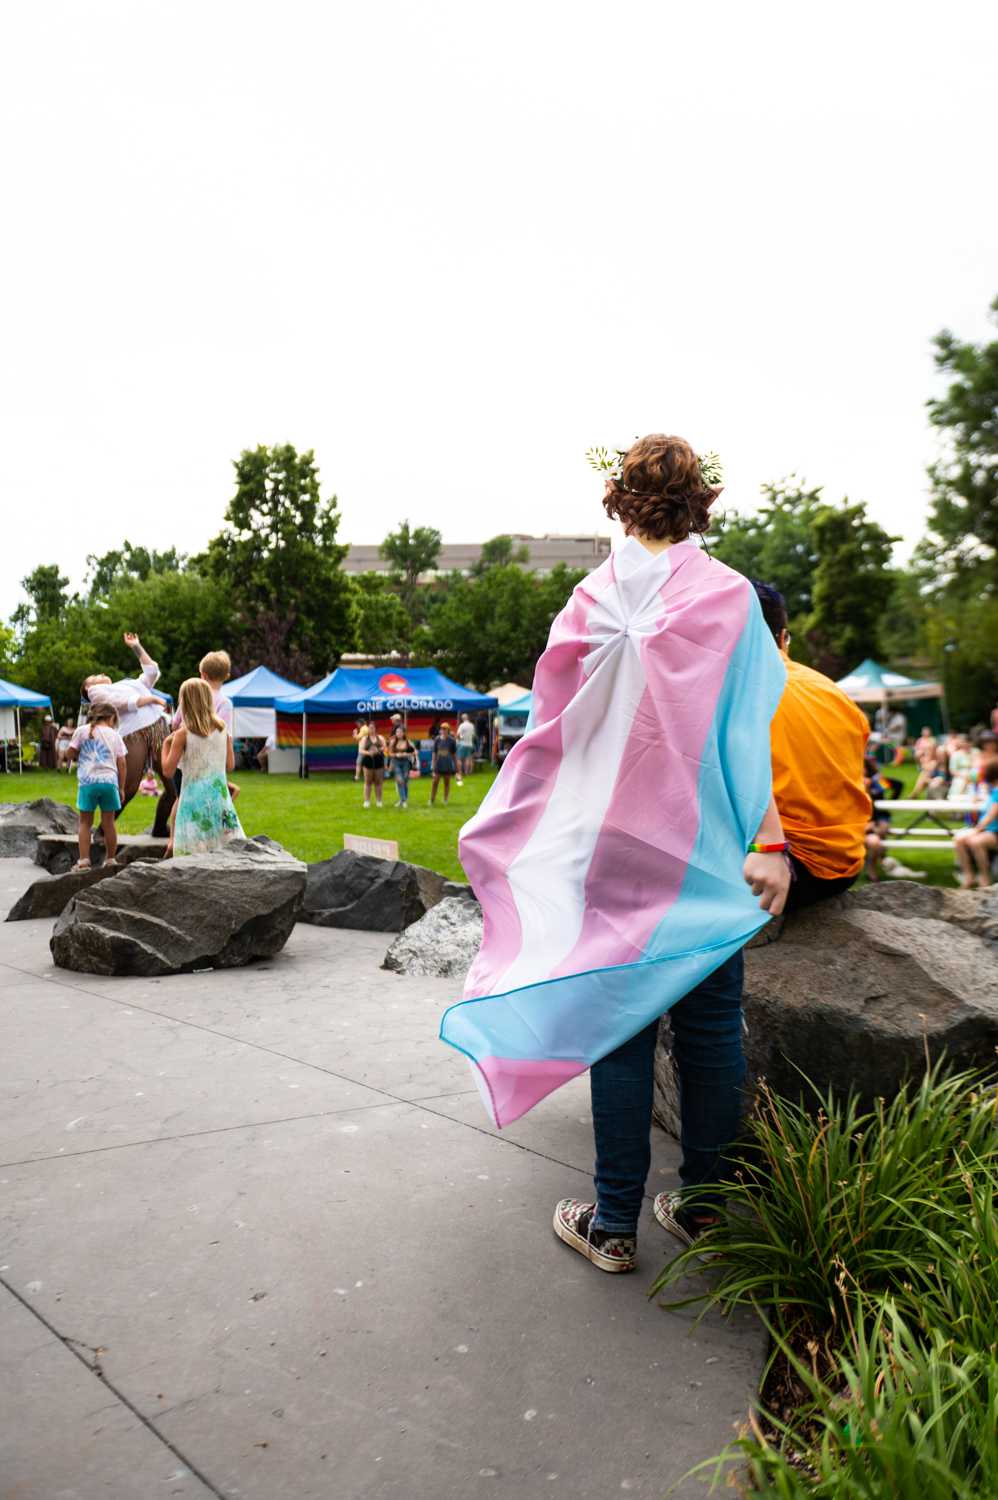 NoCo+Pride+in+the+Park+celebrates+acceptance+in+local+LGBTQ%2B+community